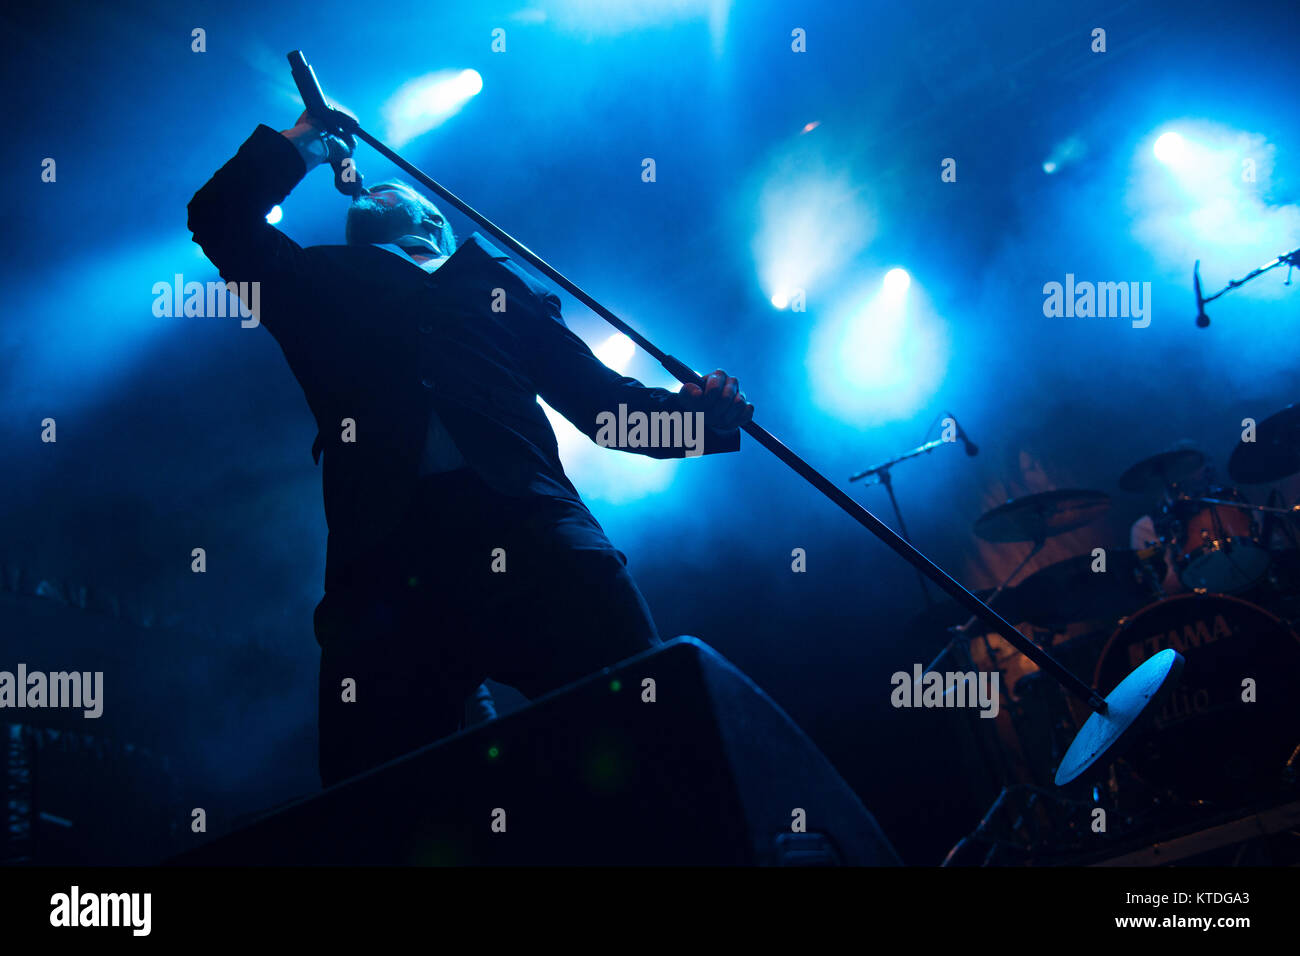 Le groupe de doom metal féroïen (Hamferð Hamferd) effectue un concert live au festival de musique des îles Féroé G ! Festival 2014. Ici le chanteur Jón Aldará est représenté sur scène. Îles Féroé, 18.07.2014. Banque D'Images